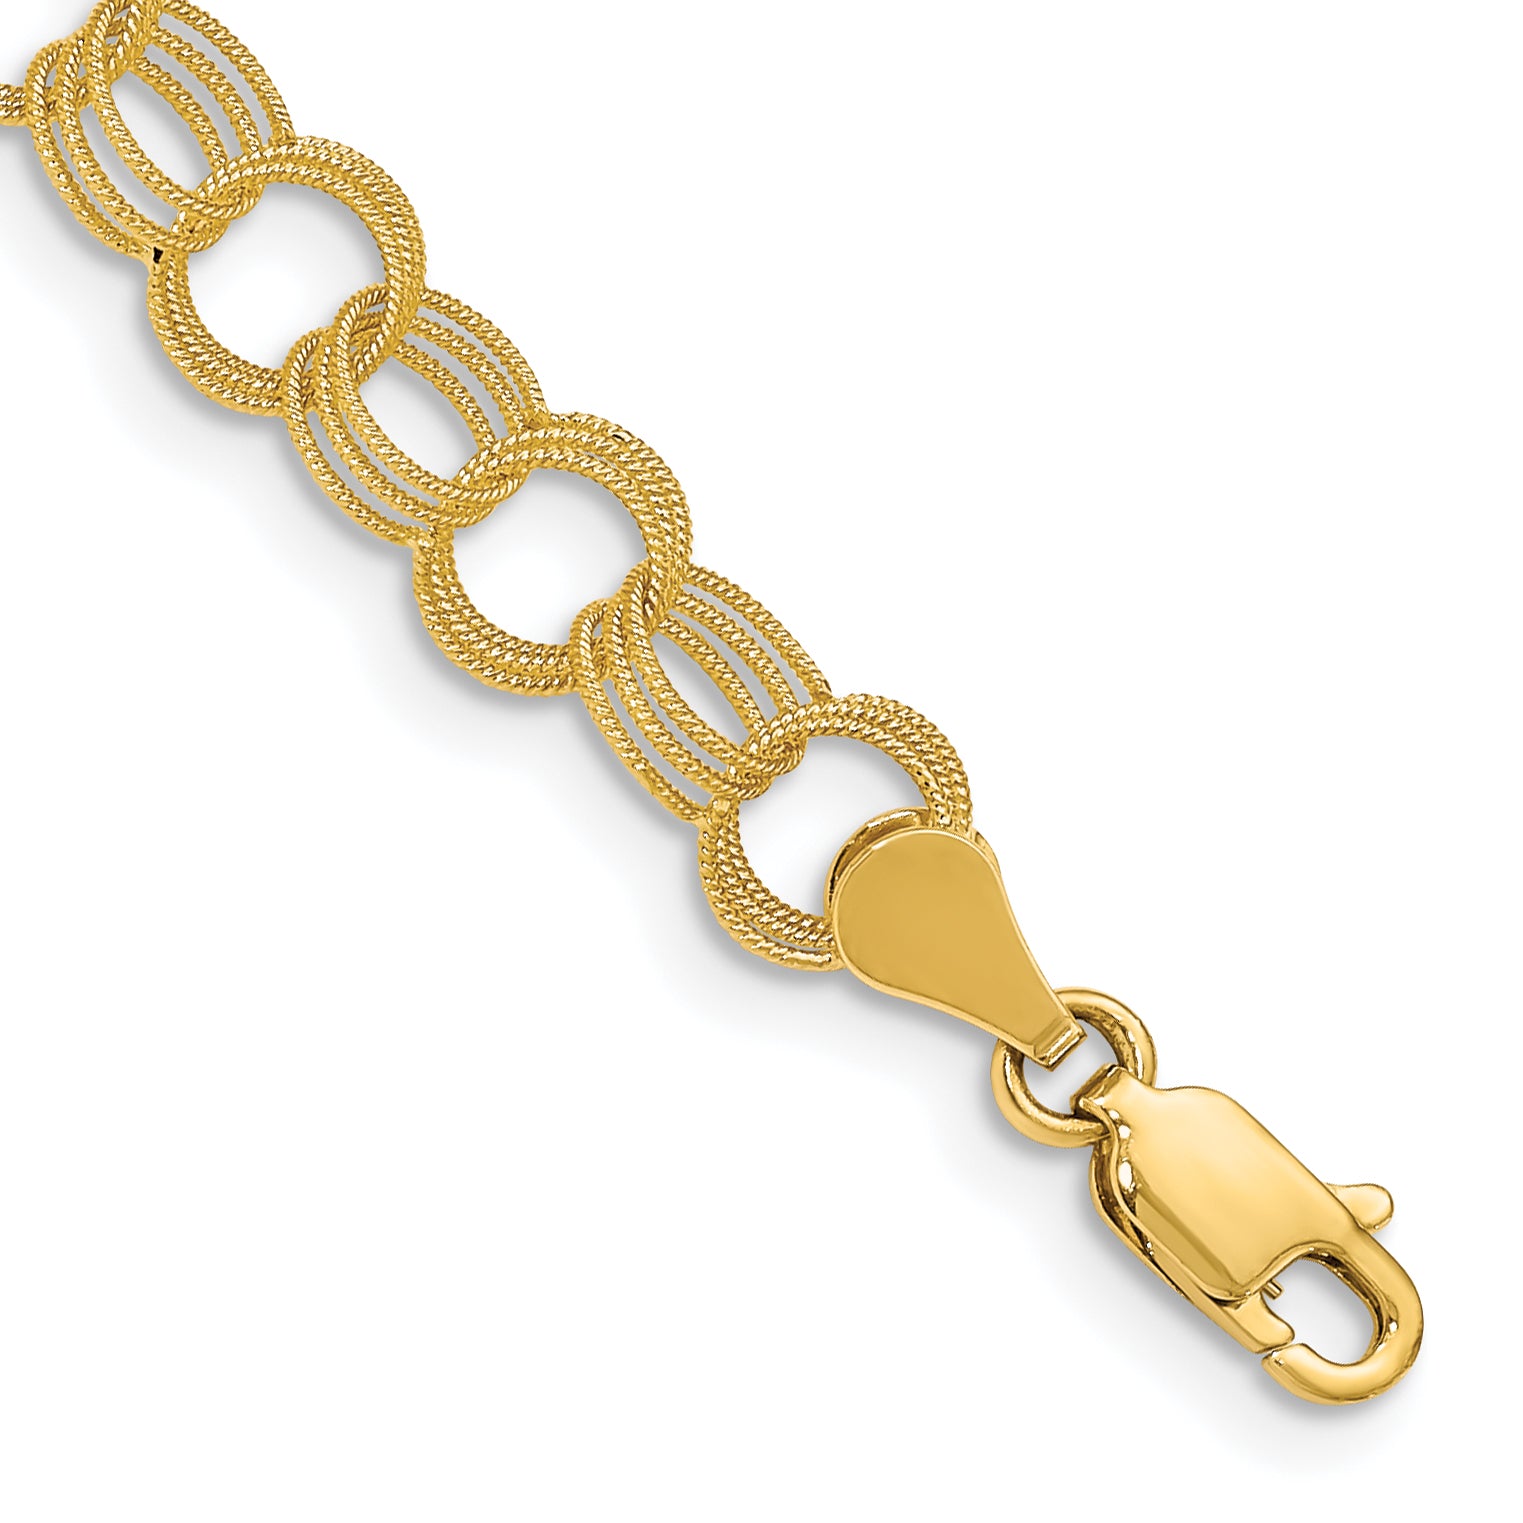 14k Solid Triple Link Charm Bracelet